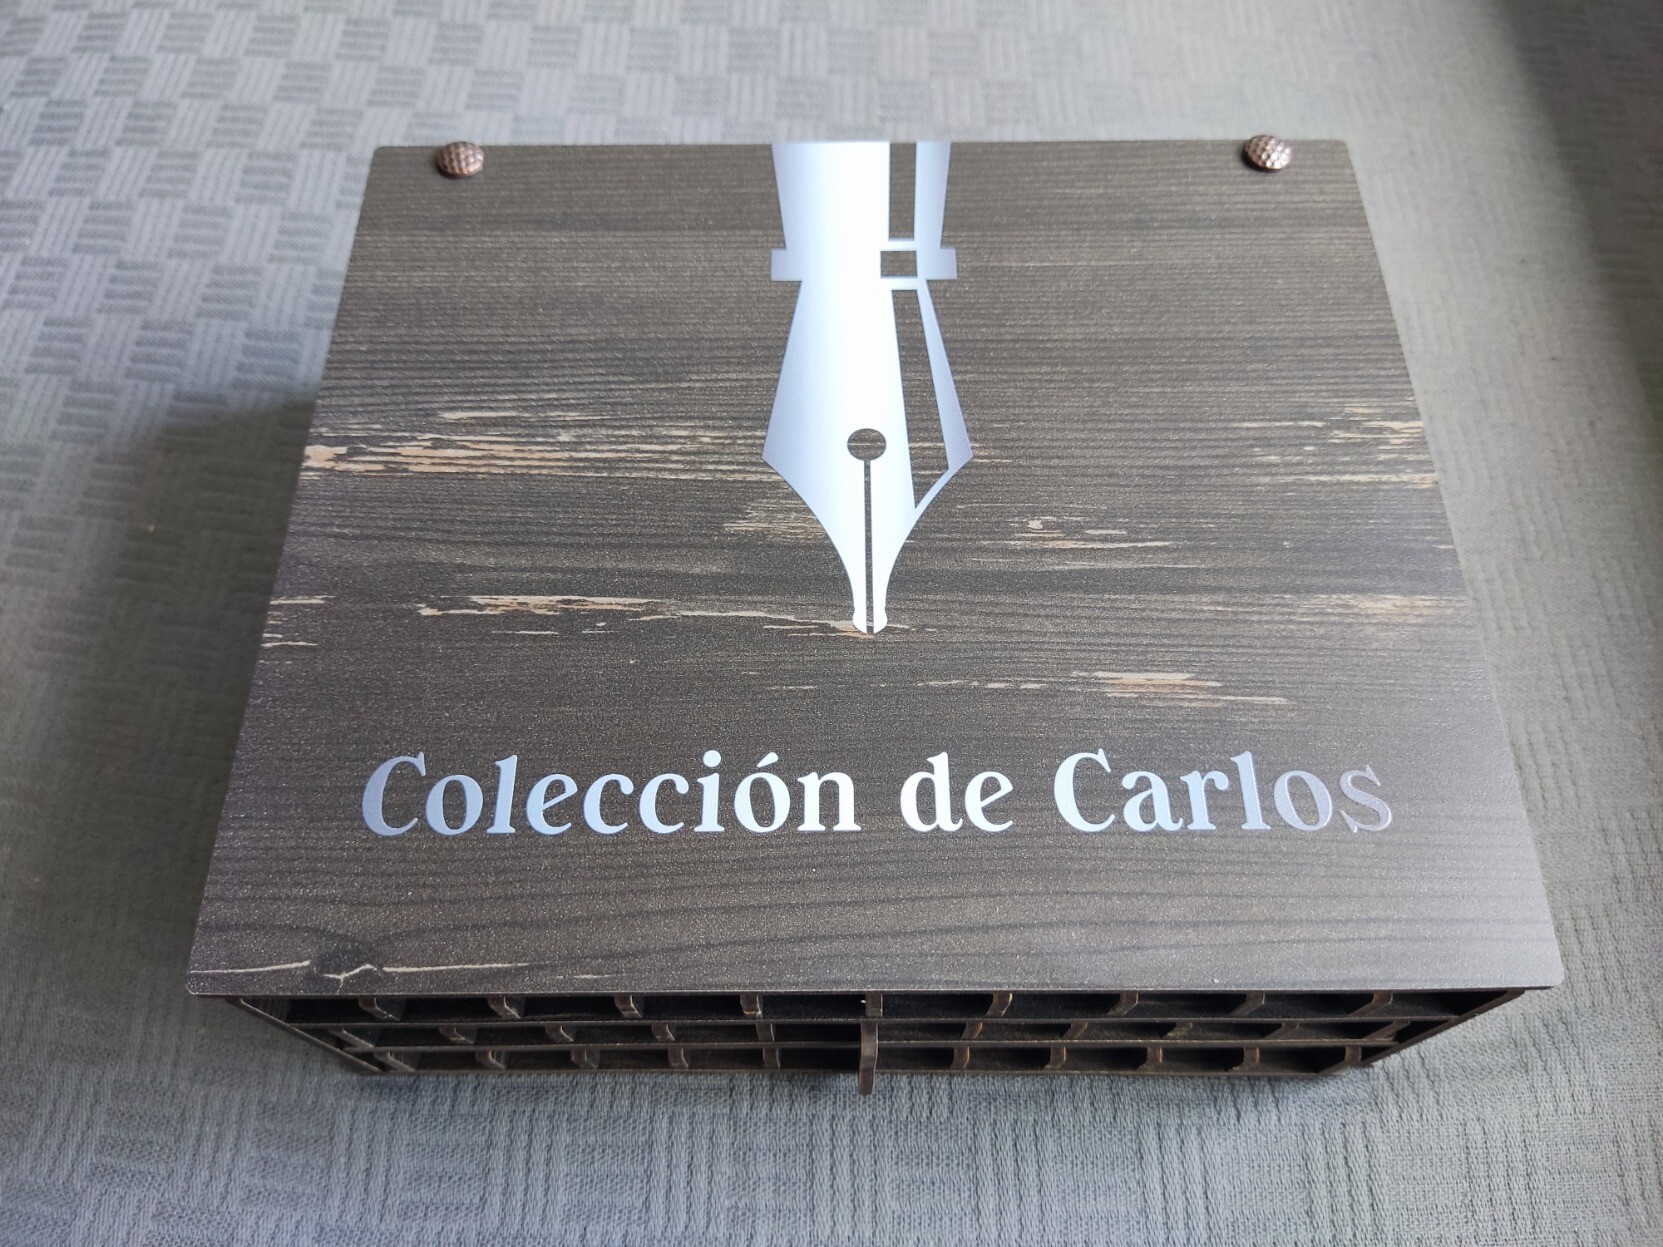 Caja marrón de madera para guardar estilográficas, con el plumín de una estilográfica serigrafiado y las palabras Colección de Carlos escritas